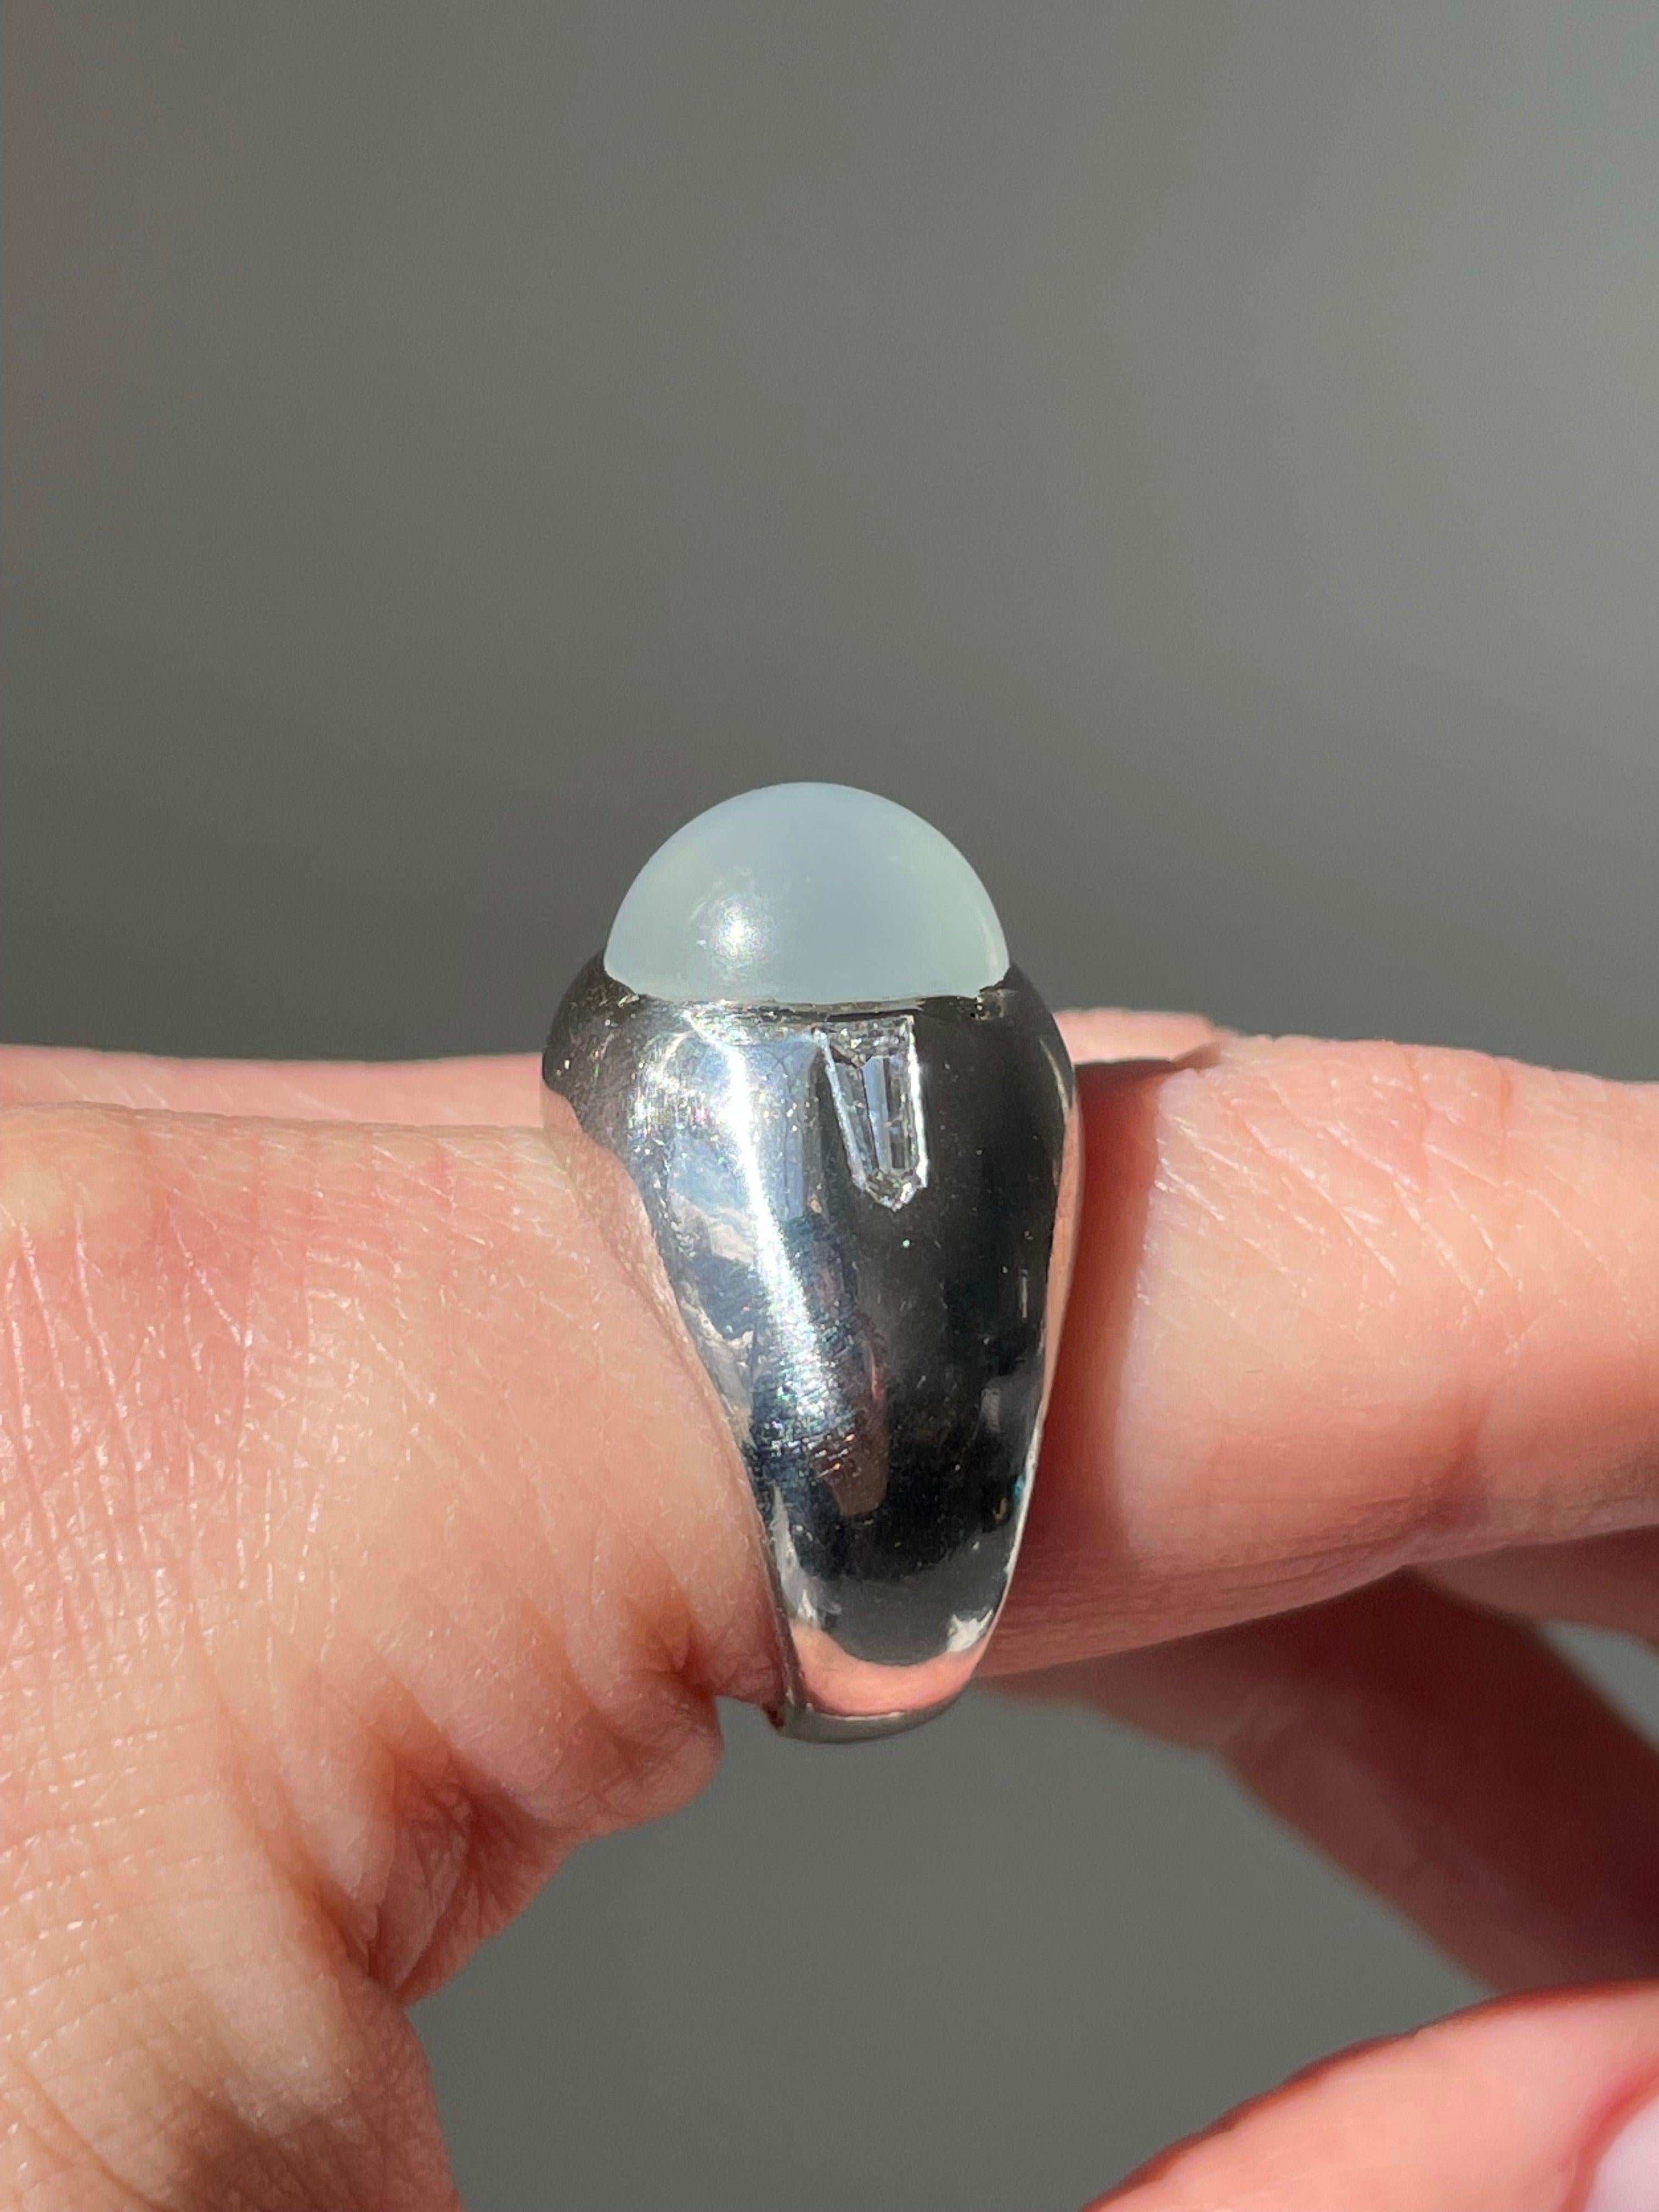 moon stone wear in which finger